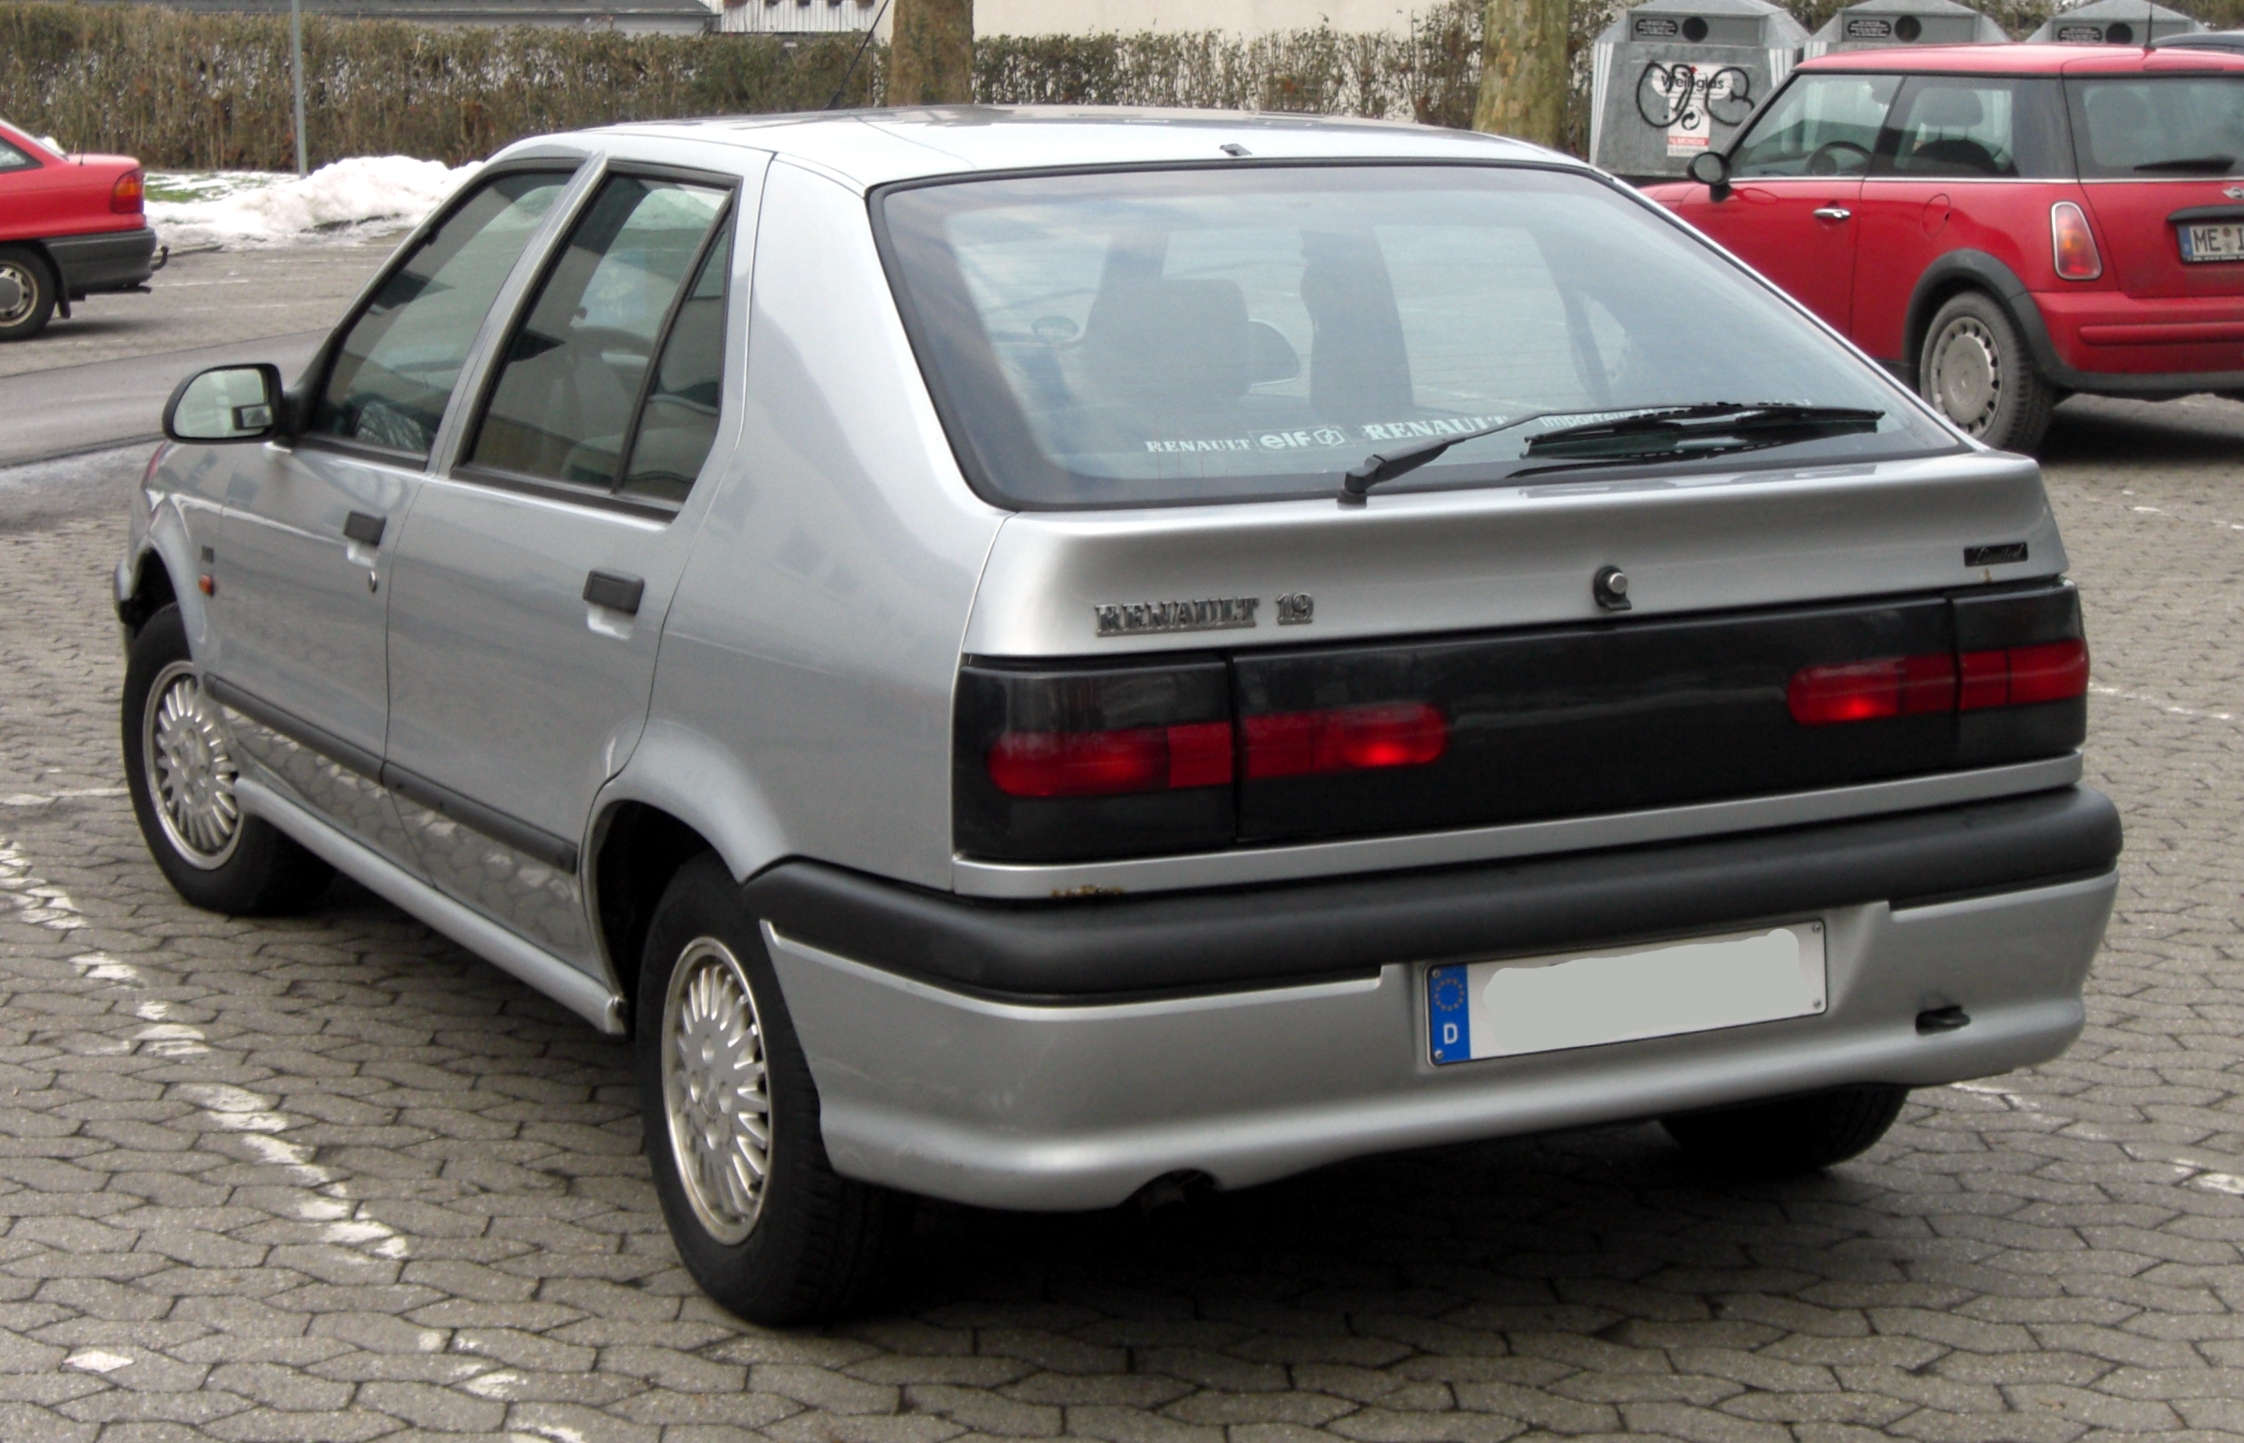 Renault_19_rear.jpg